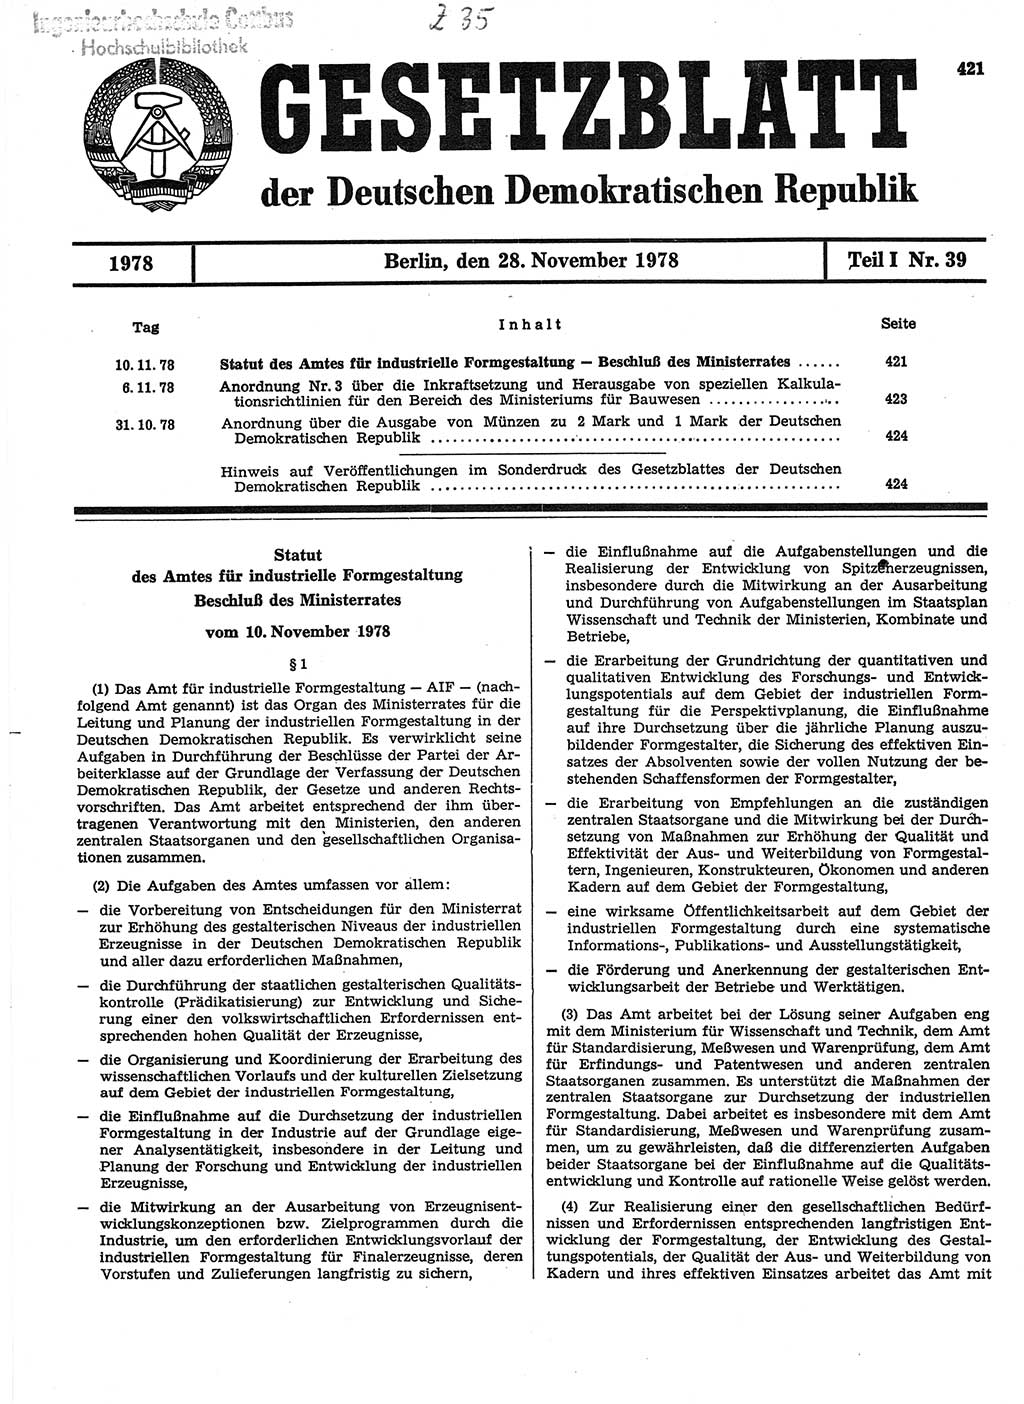 Gesetzblatt (GBl.) der Deutschen Demokratischen Republik (DDR) Teil Ⅰ 1978, Seite 421 (GBl. DDR Ⅰ 1978, S. 421)